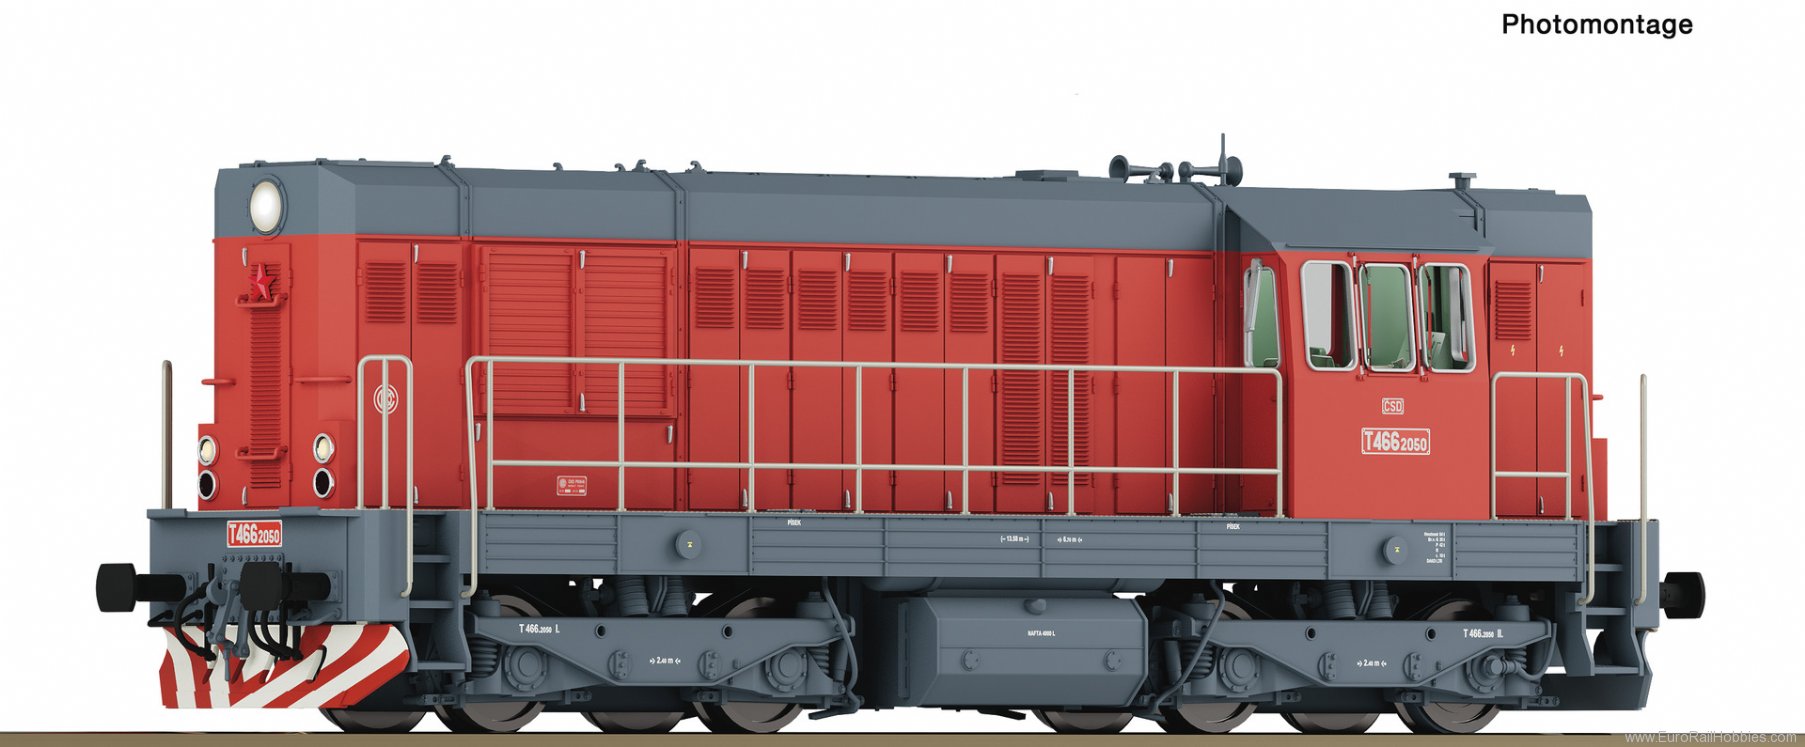 Roco 7300003 Diesel locomotive T 466 2050, CSD (DC Analog)